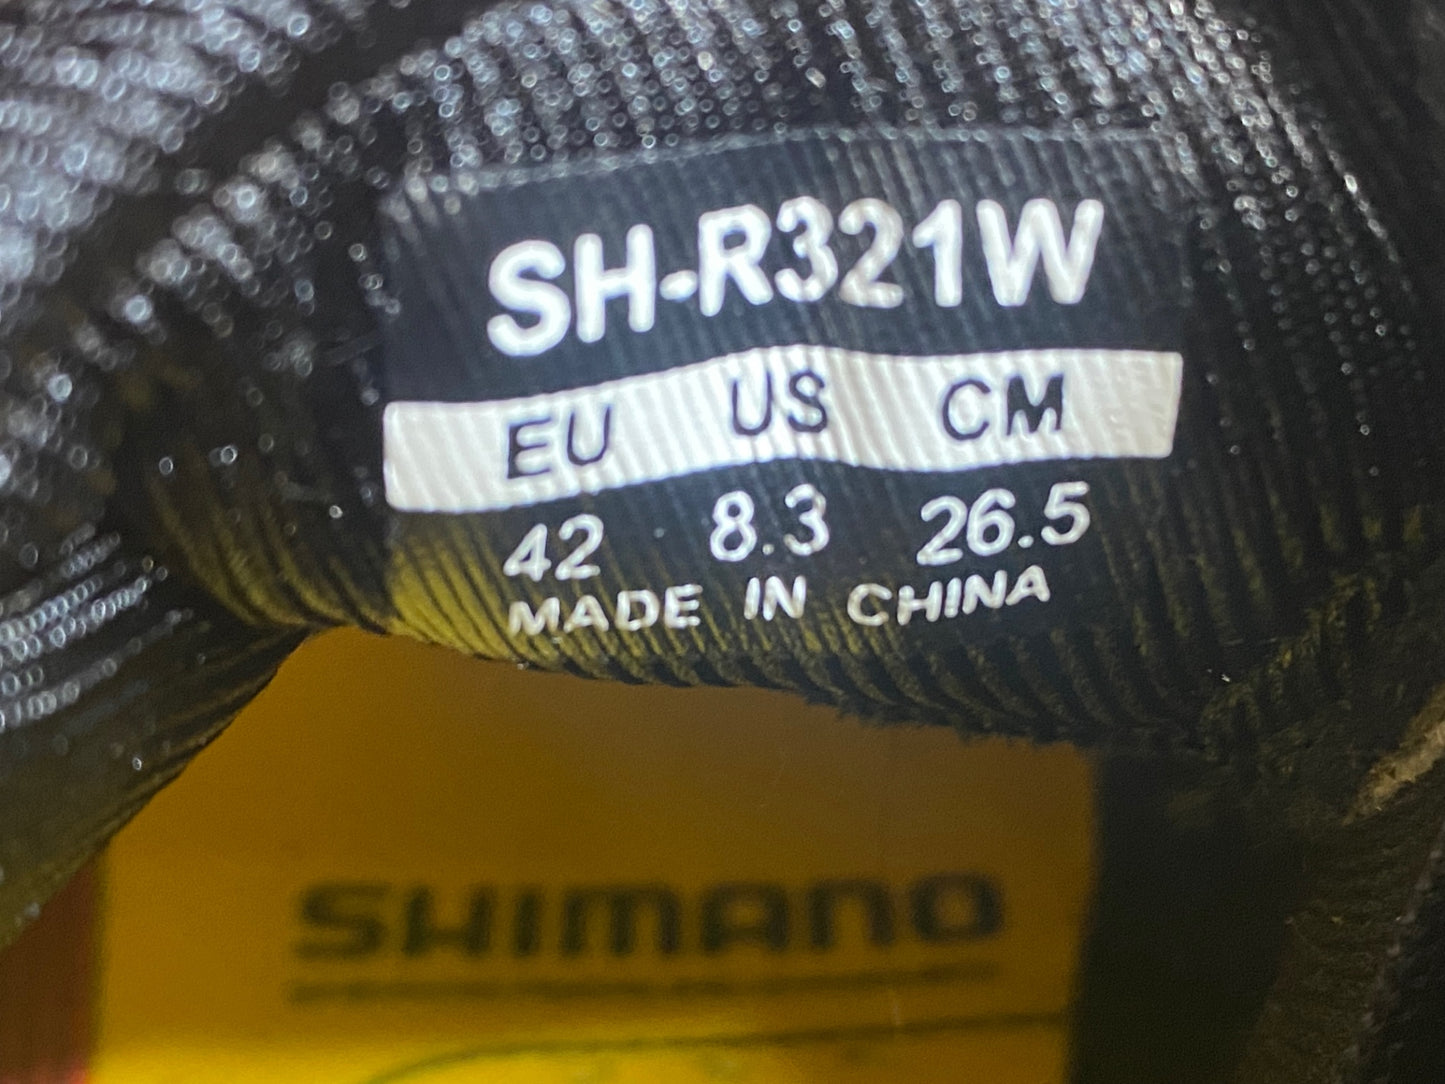 HT822 シマノ SHIMANO SH-R321W ビンディングシューズ 黒白 EU42 ※汚れ ソールに傷あり